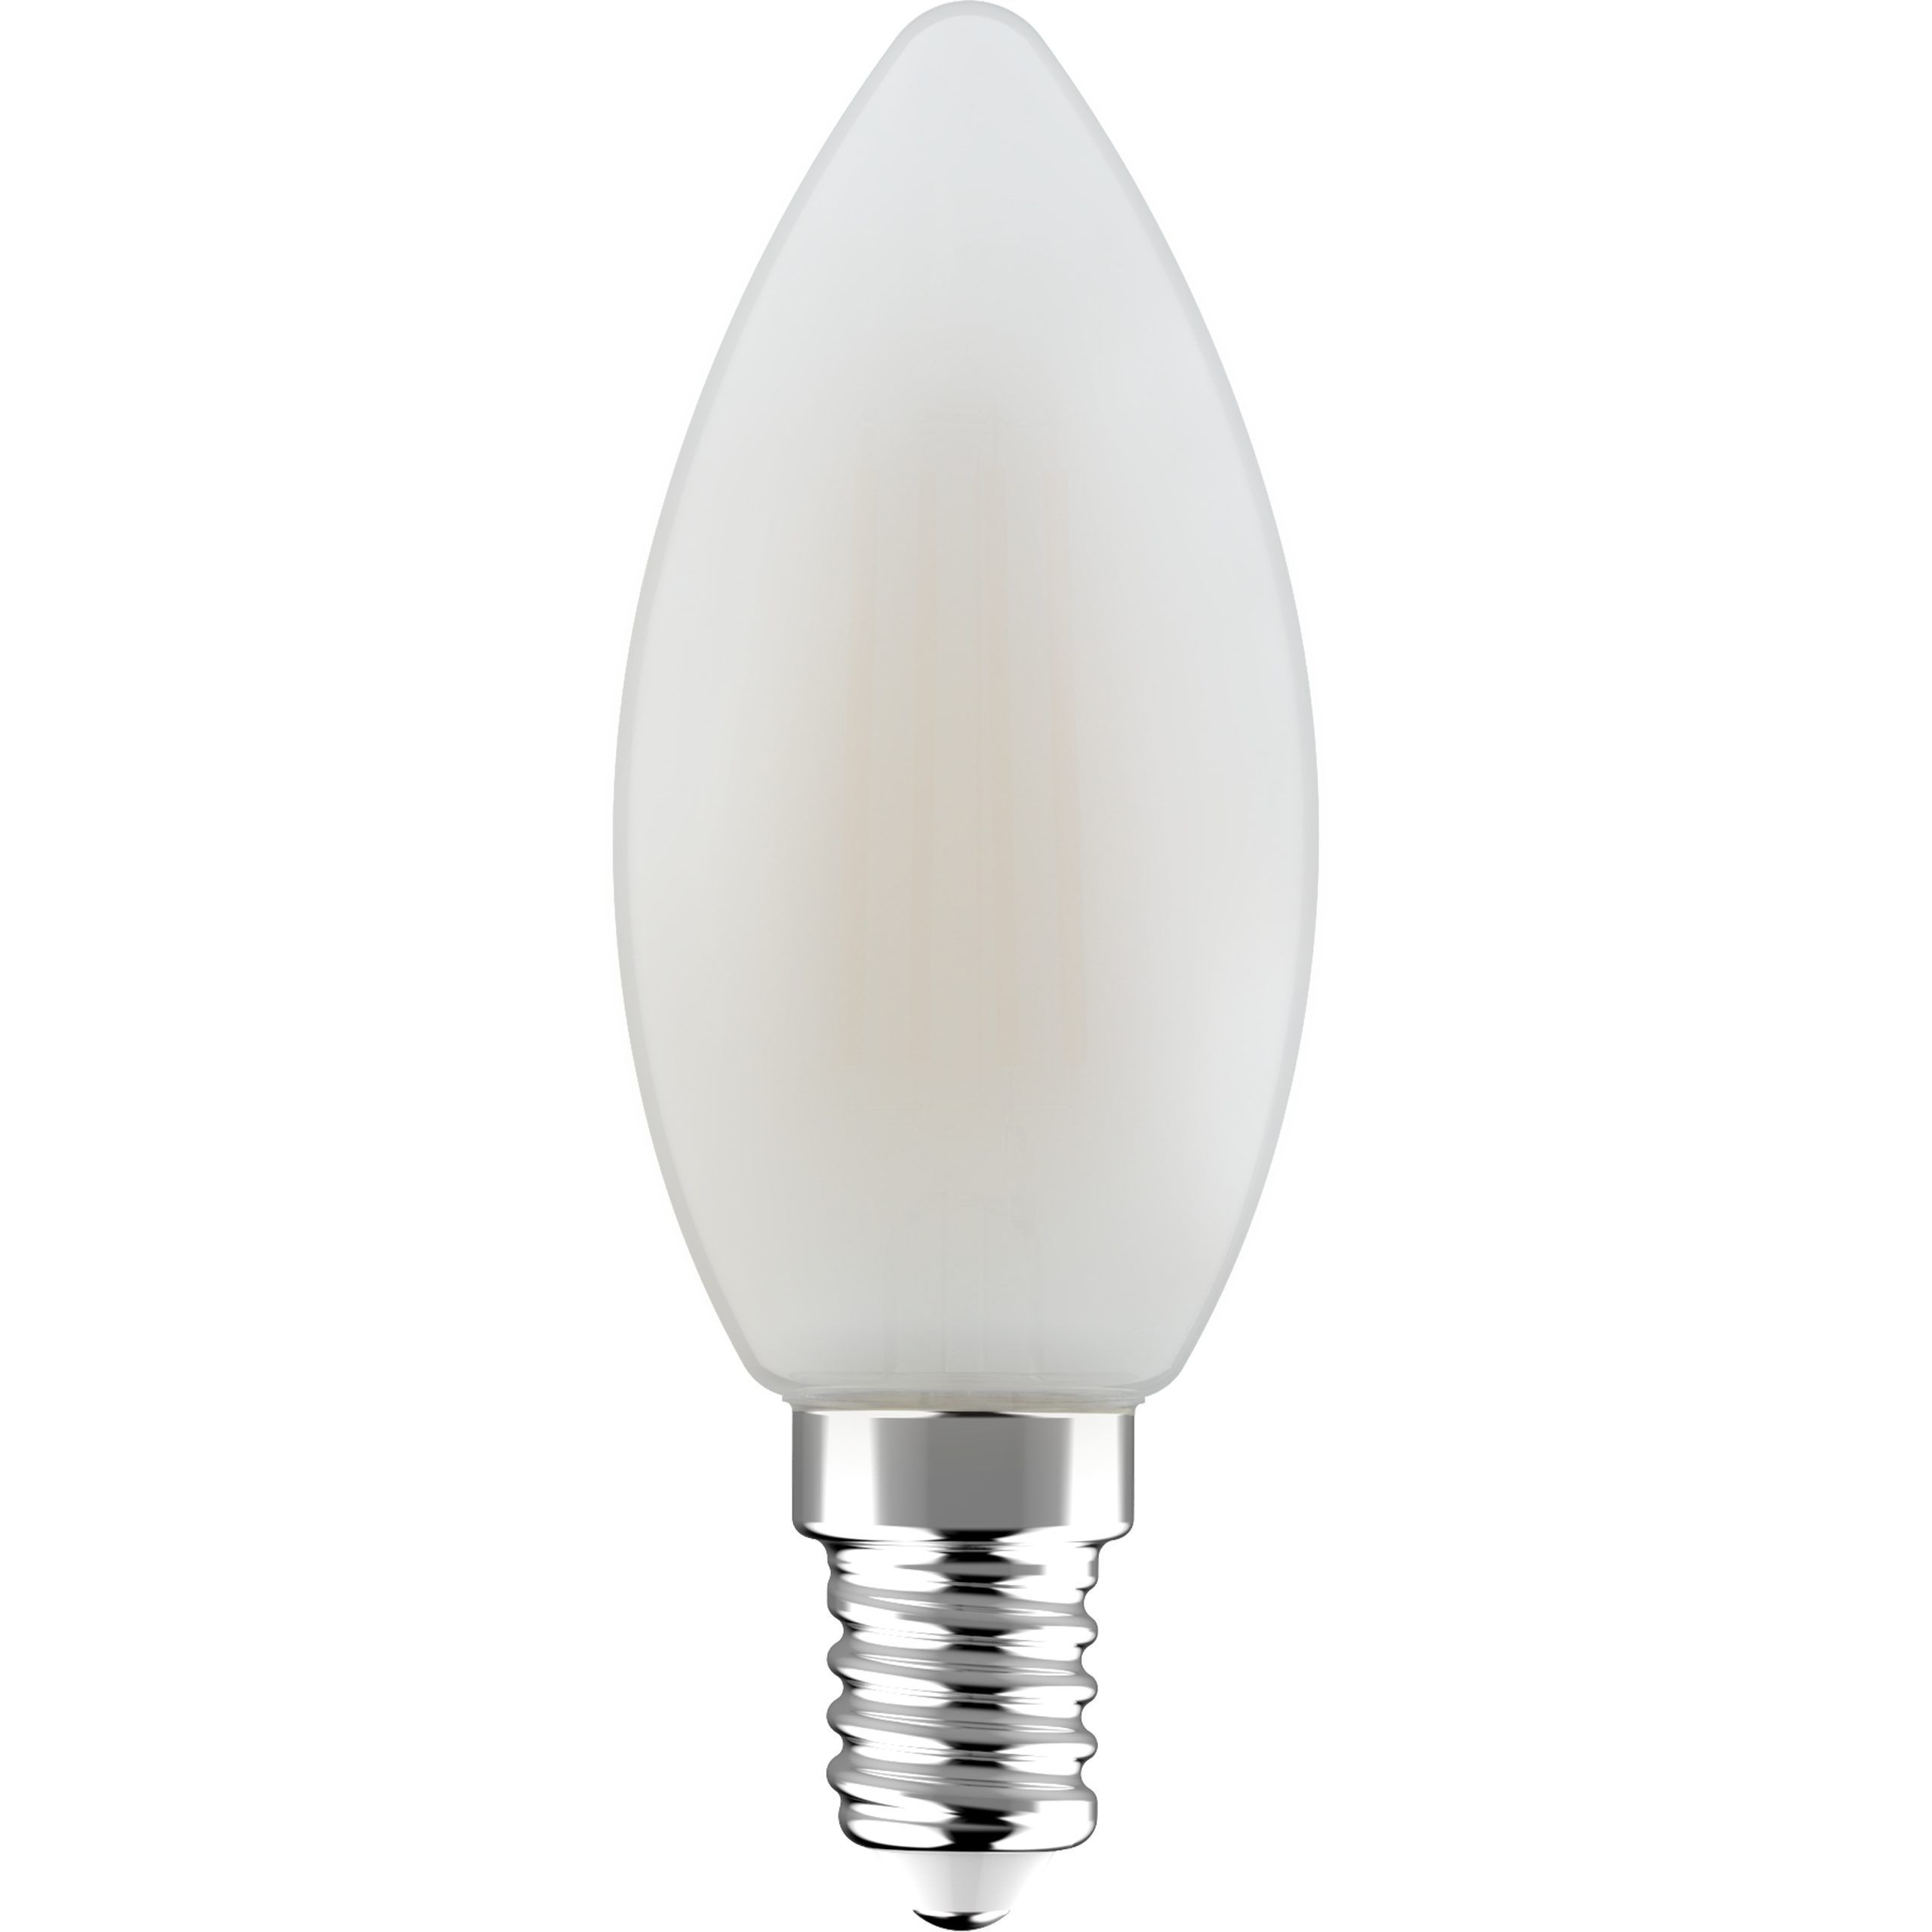 LED's light LED-Leuchtmittel 0620153 LED Kerze, E14, E14 4.5W warmweiß Frosted C35